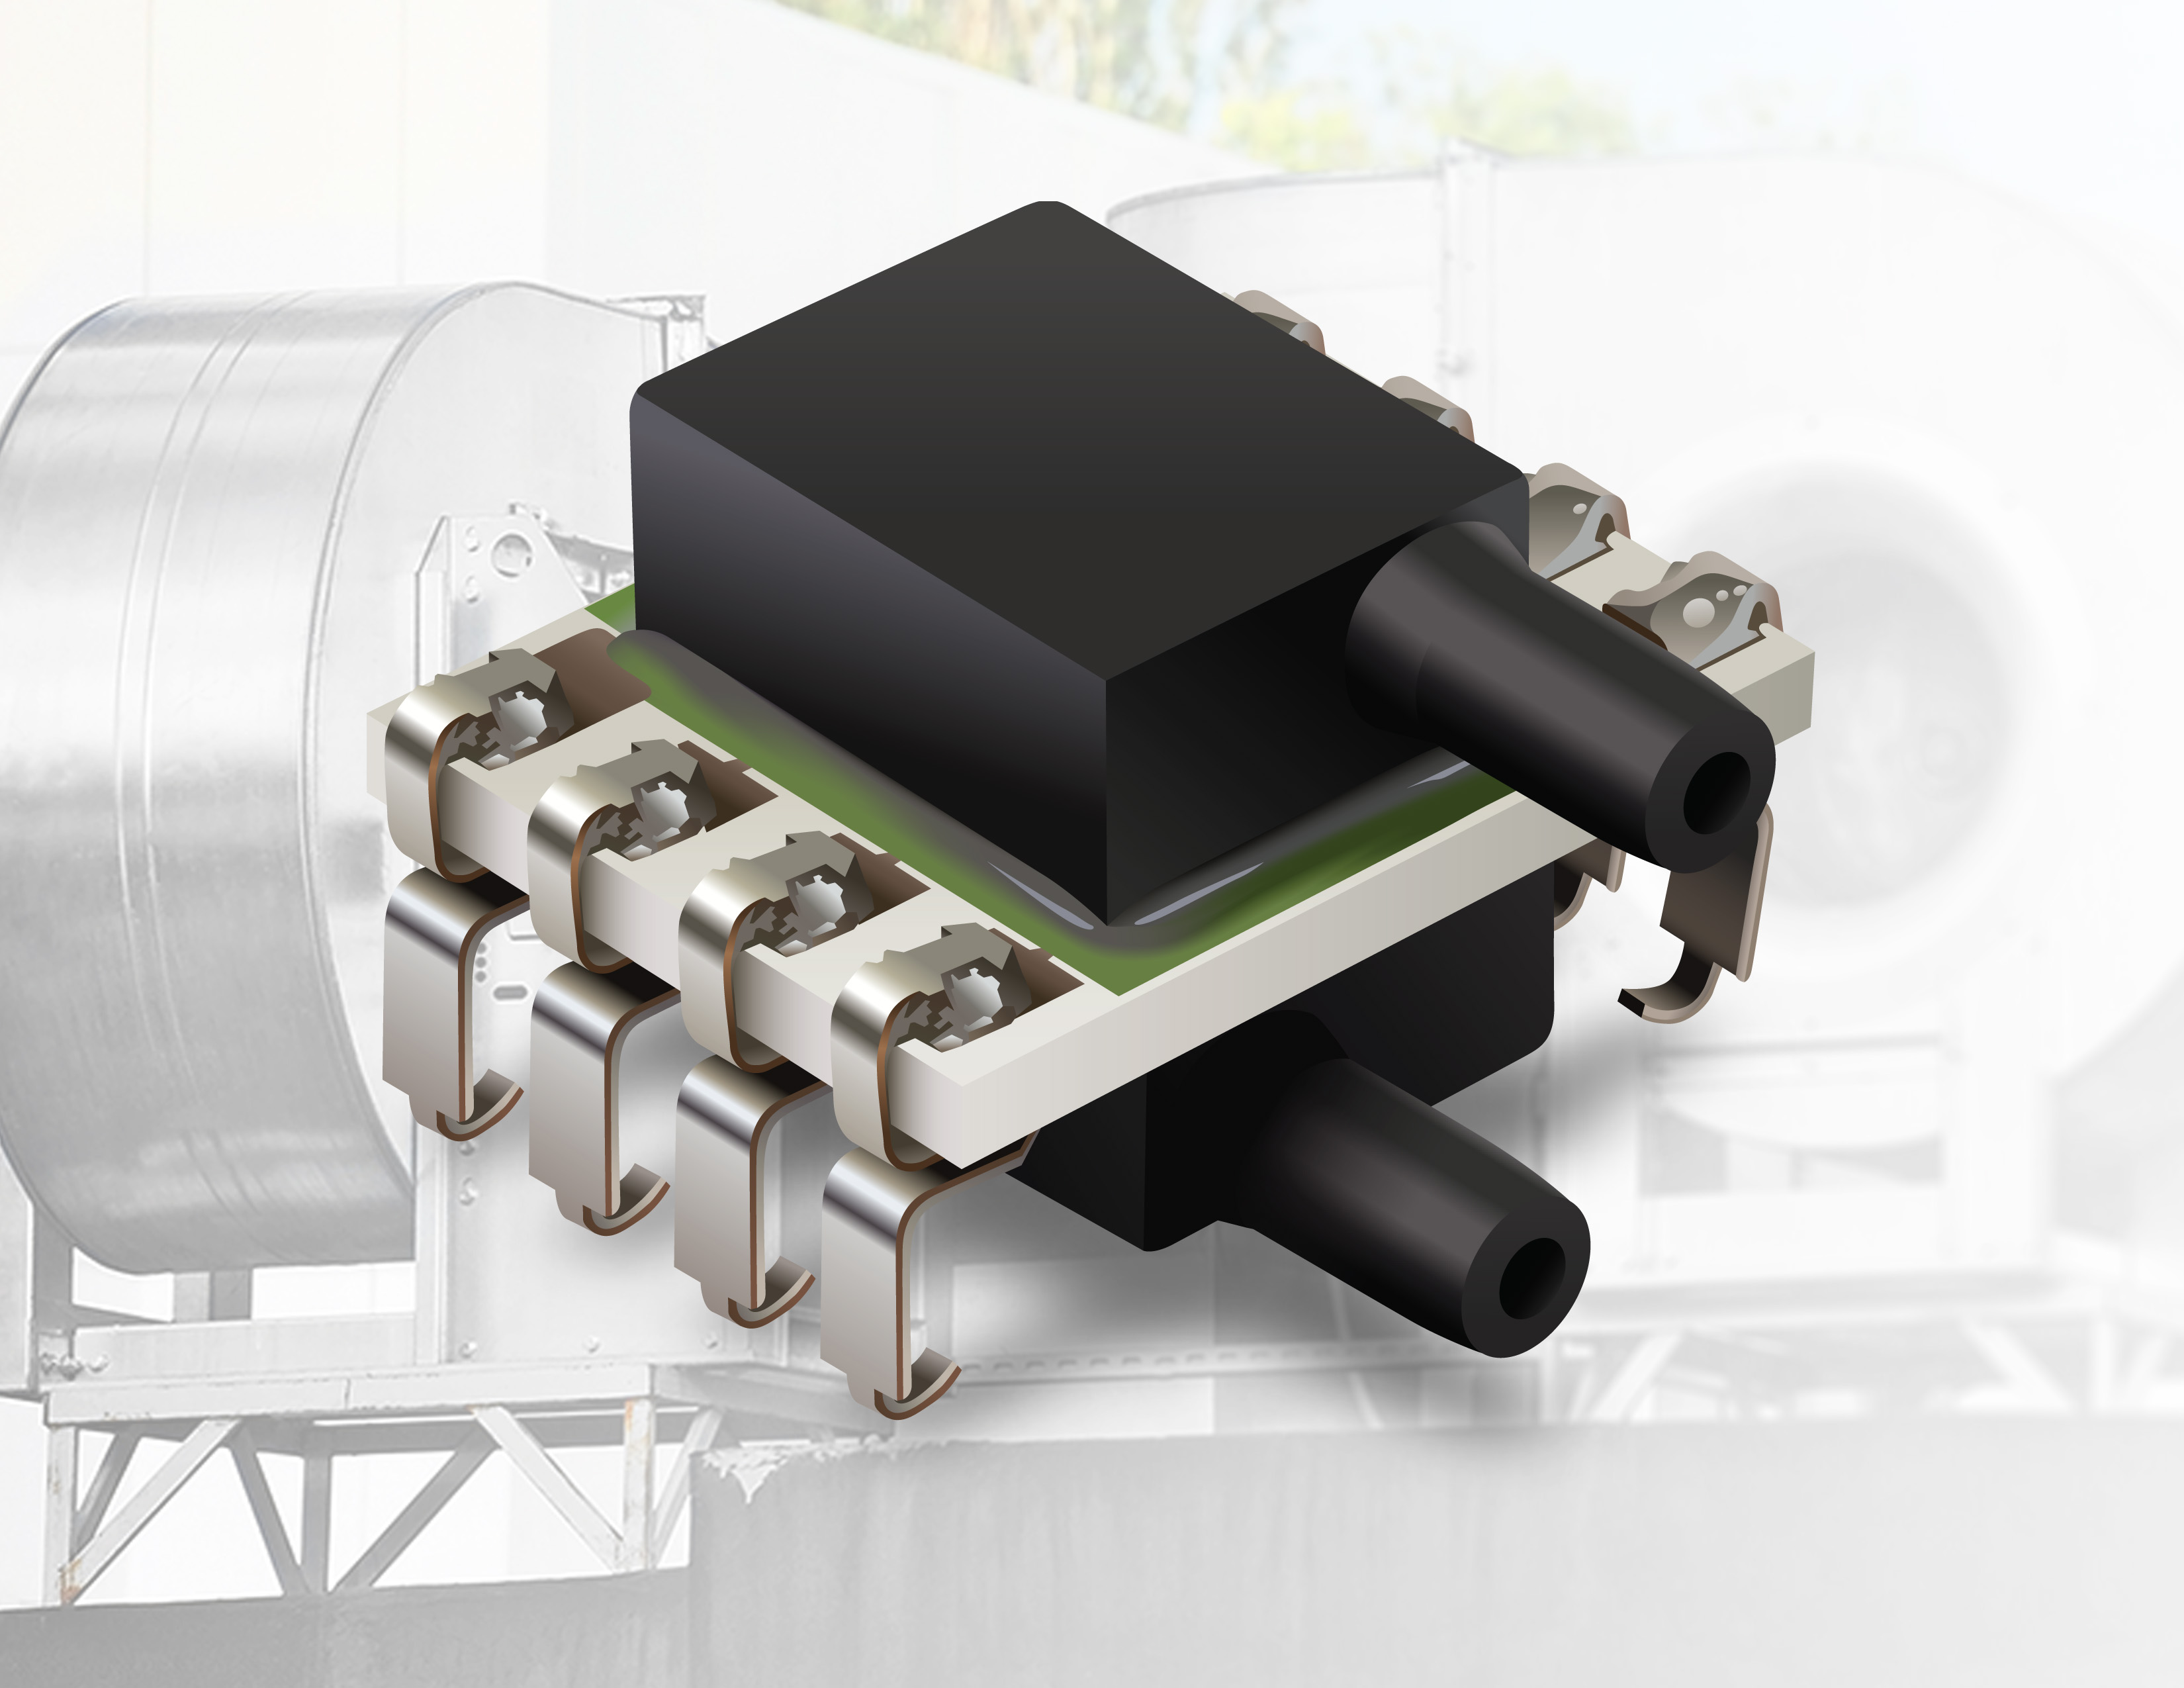 MEMS Environmental Sensor for Ultra-Low Pressure Sensing